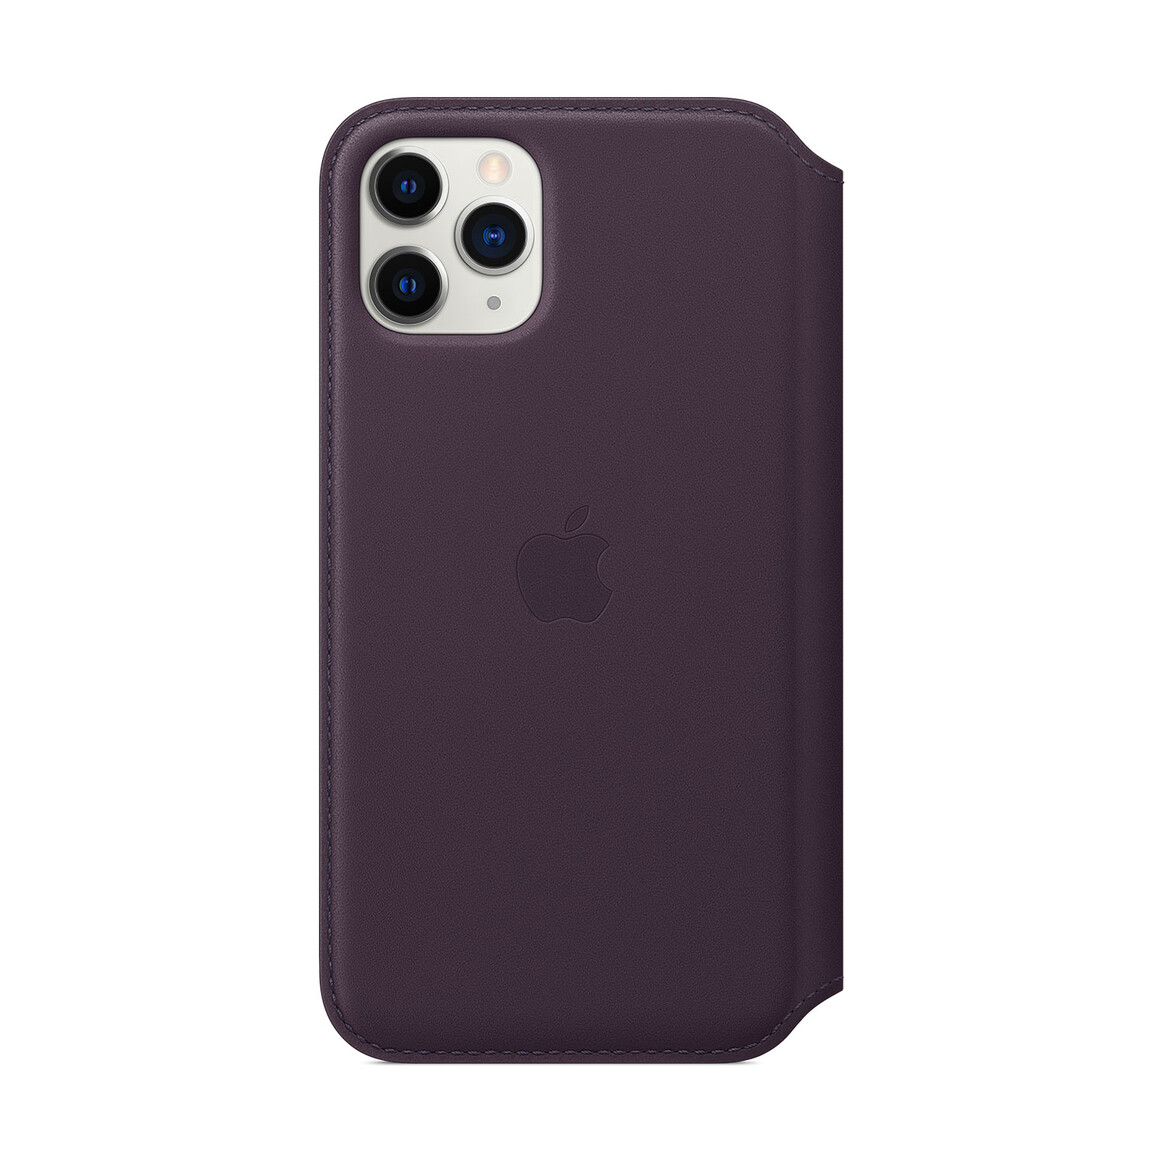 <h1>Apple iPhone 11 Pro Max Leder Folio, aubergine</h1>